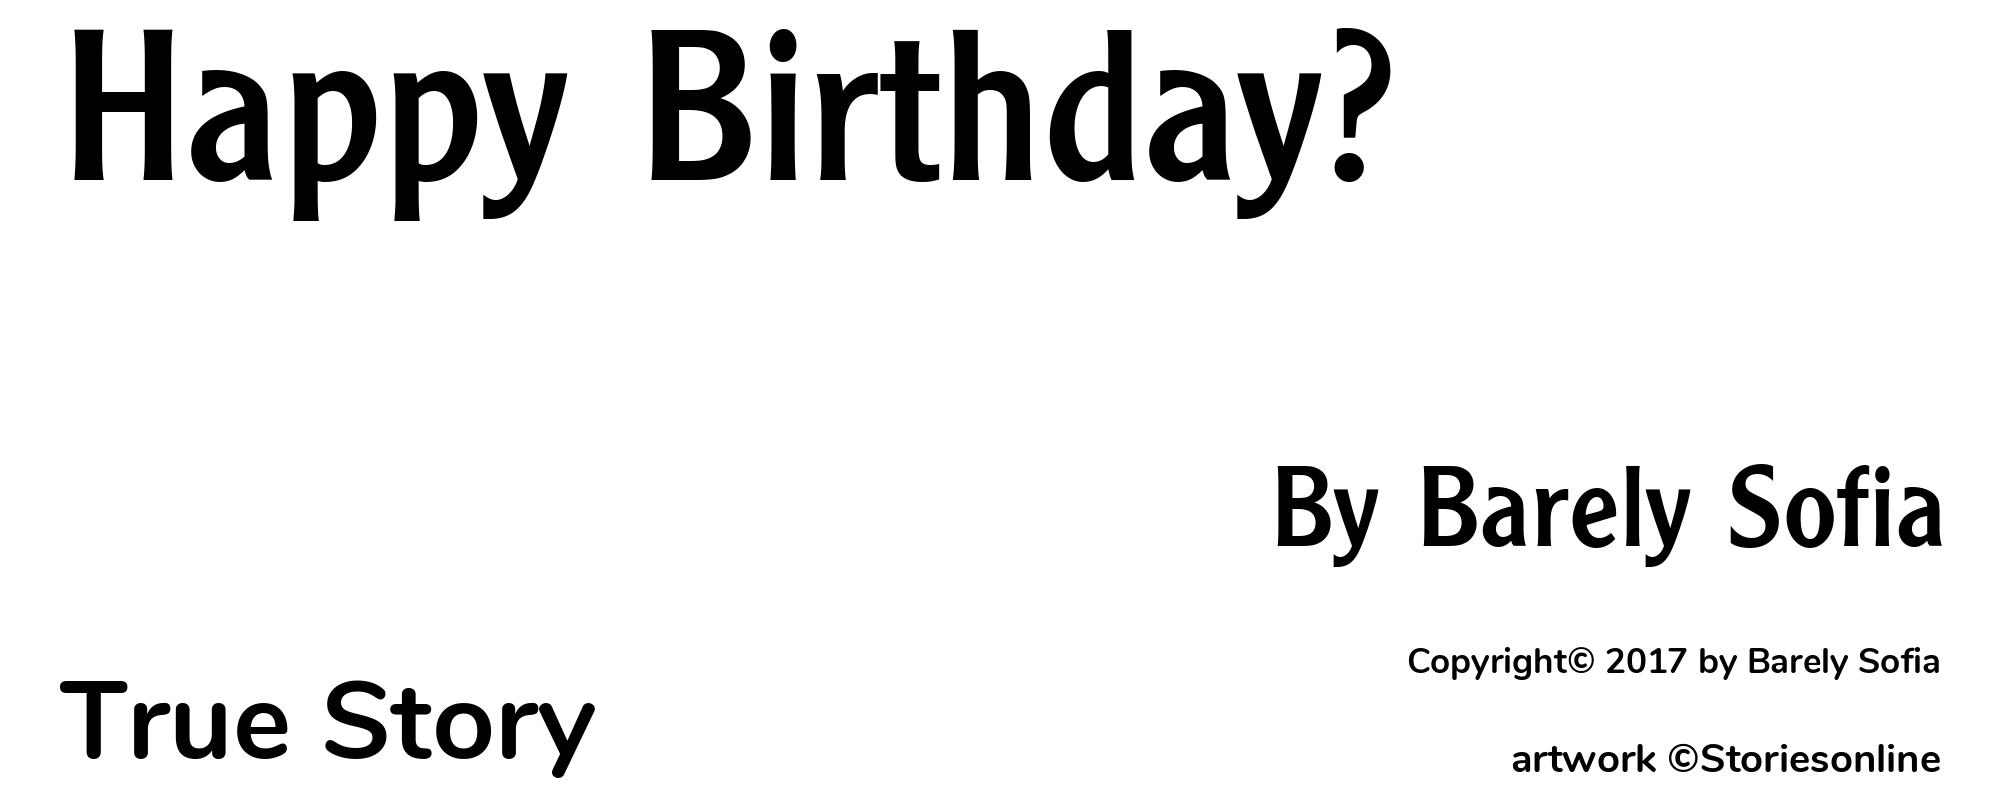 Happy Birthday? - Cover